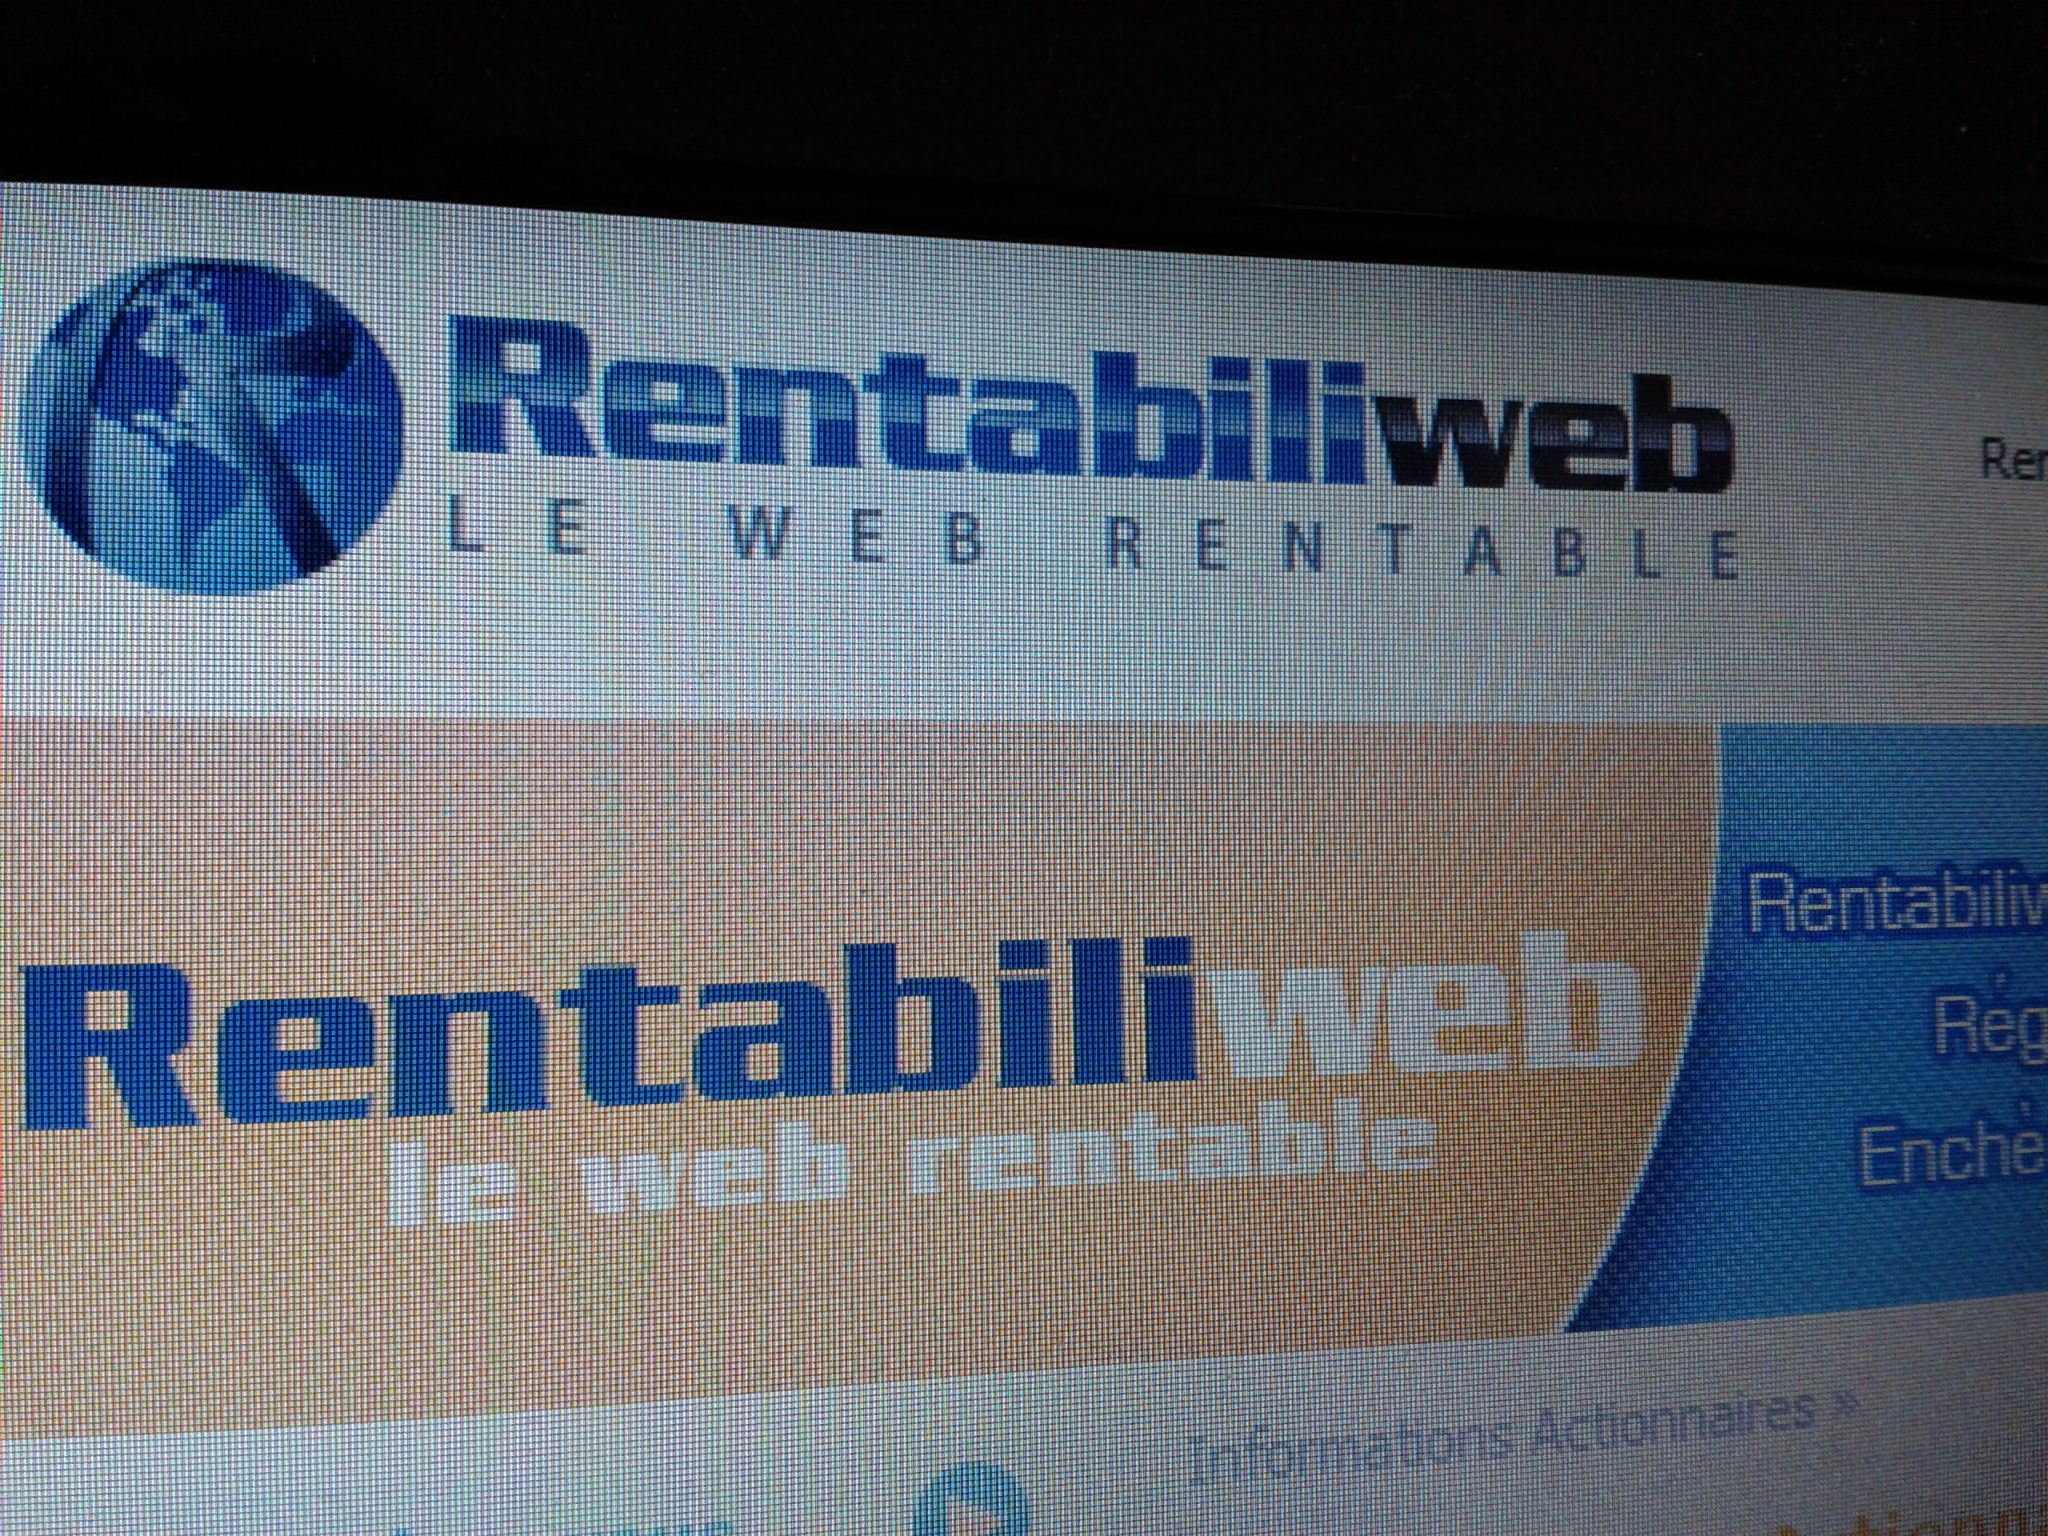 Rentabiliweb complète les paiements de possibilités de crédits